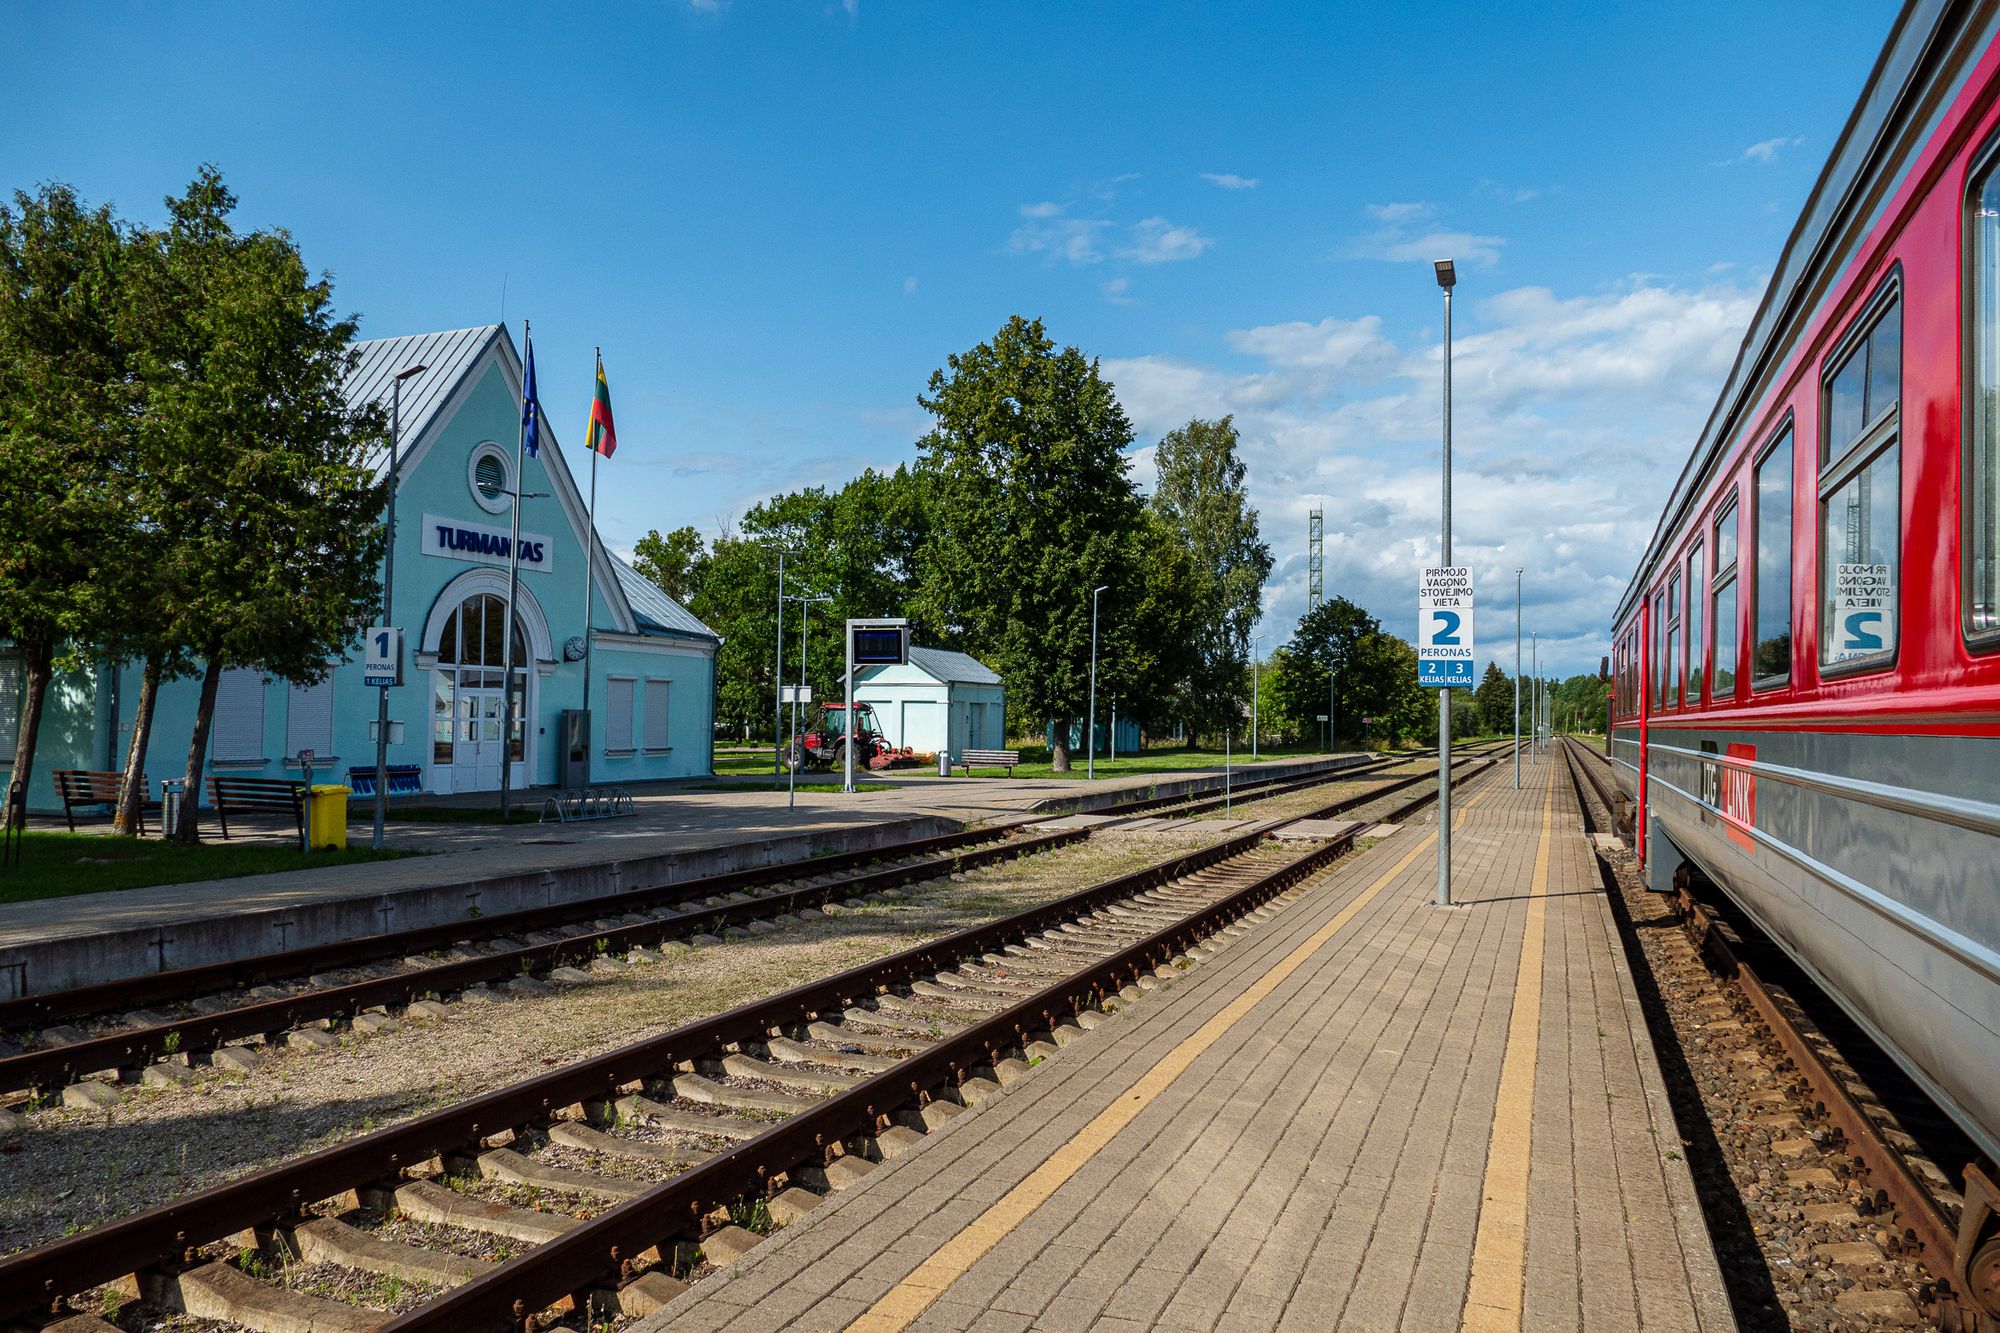 Bahnhof von Turmantas mit einem Triebwagen der litauischen Bahn